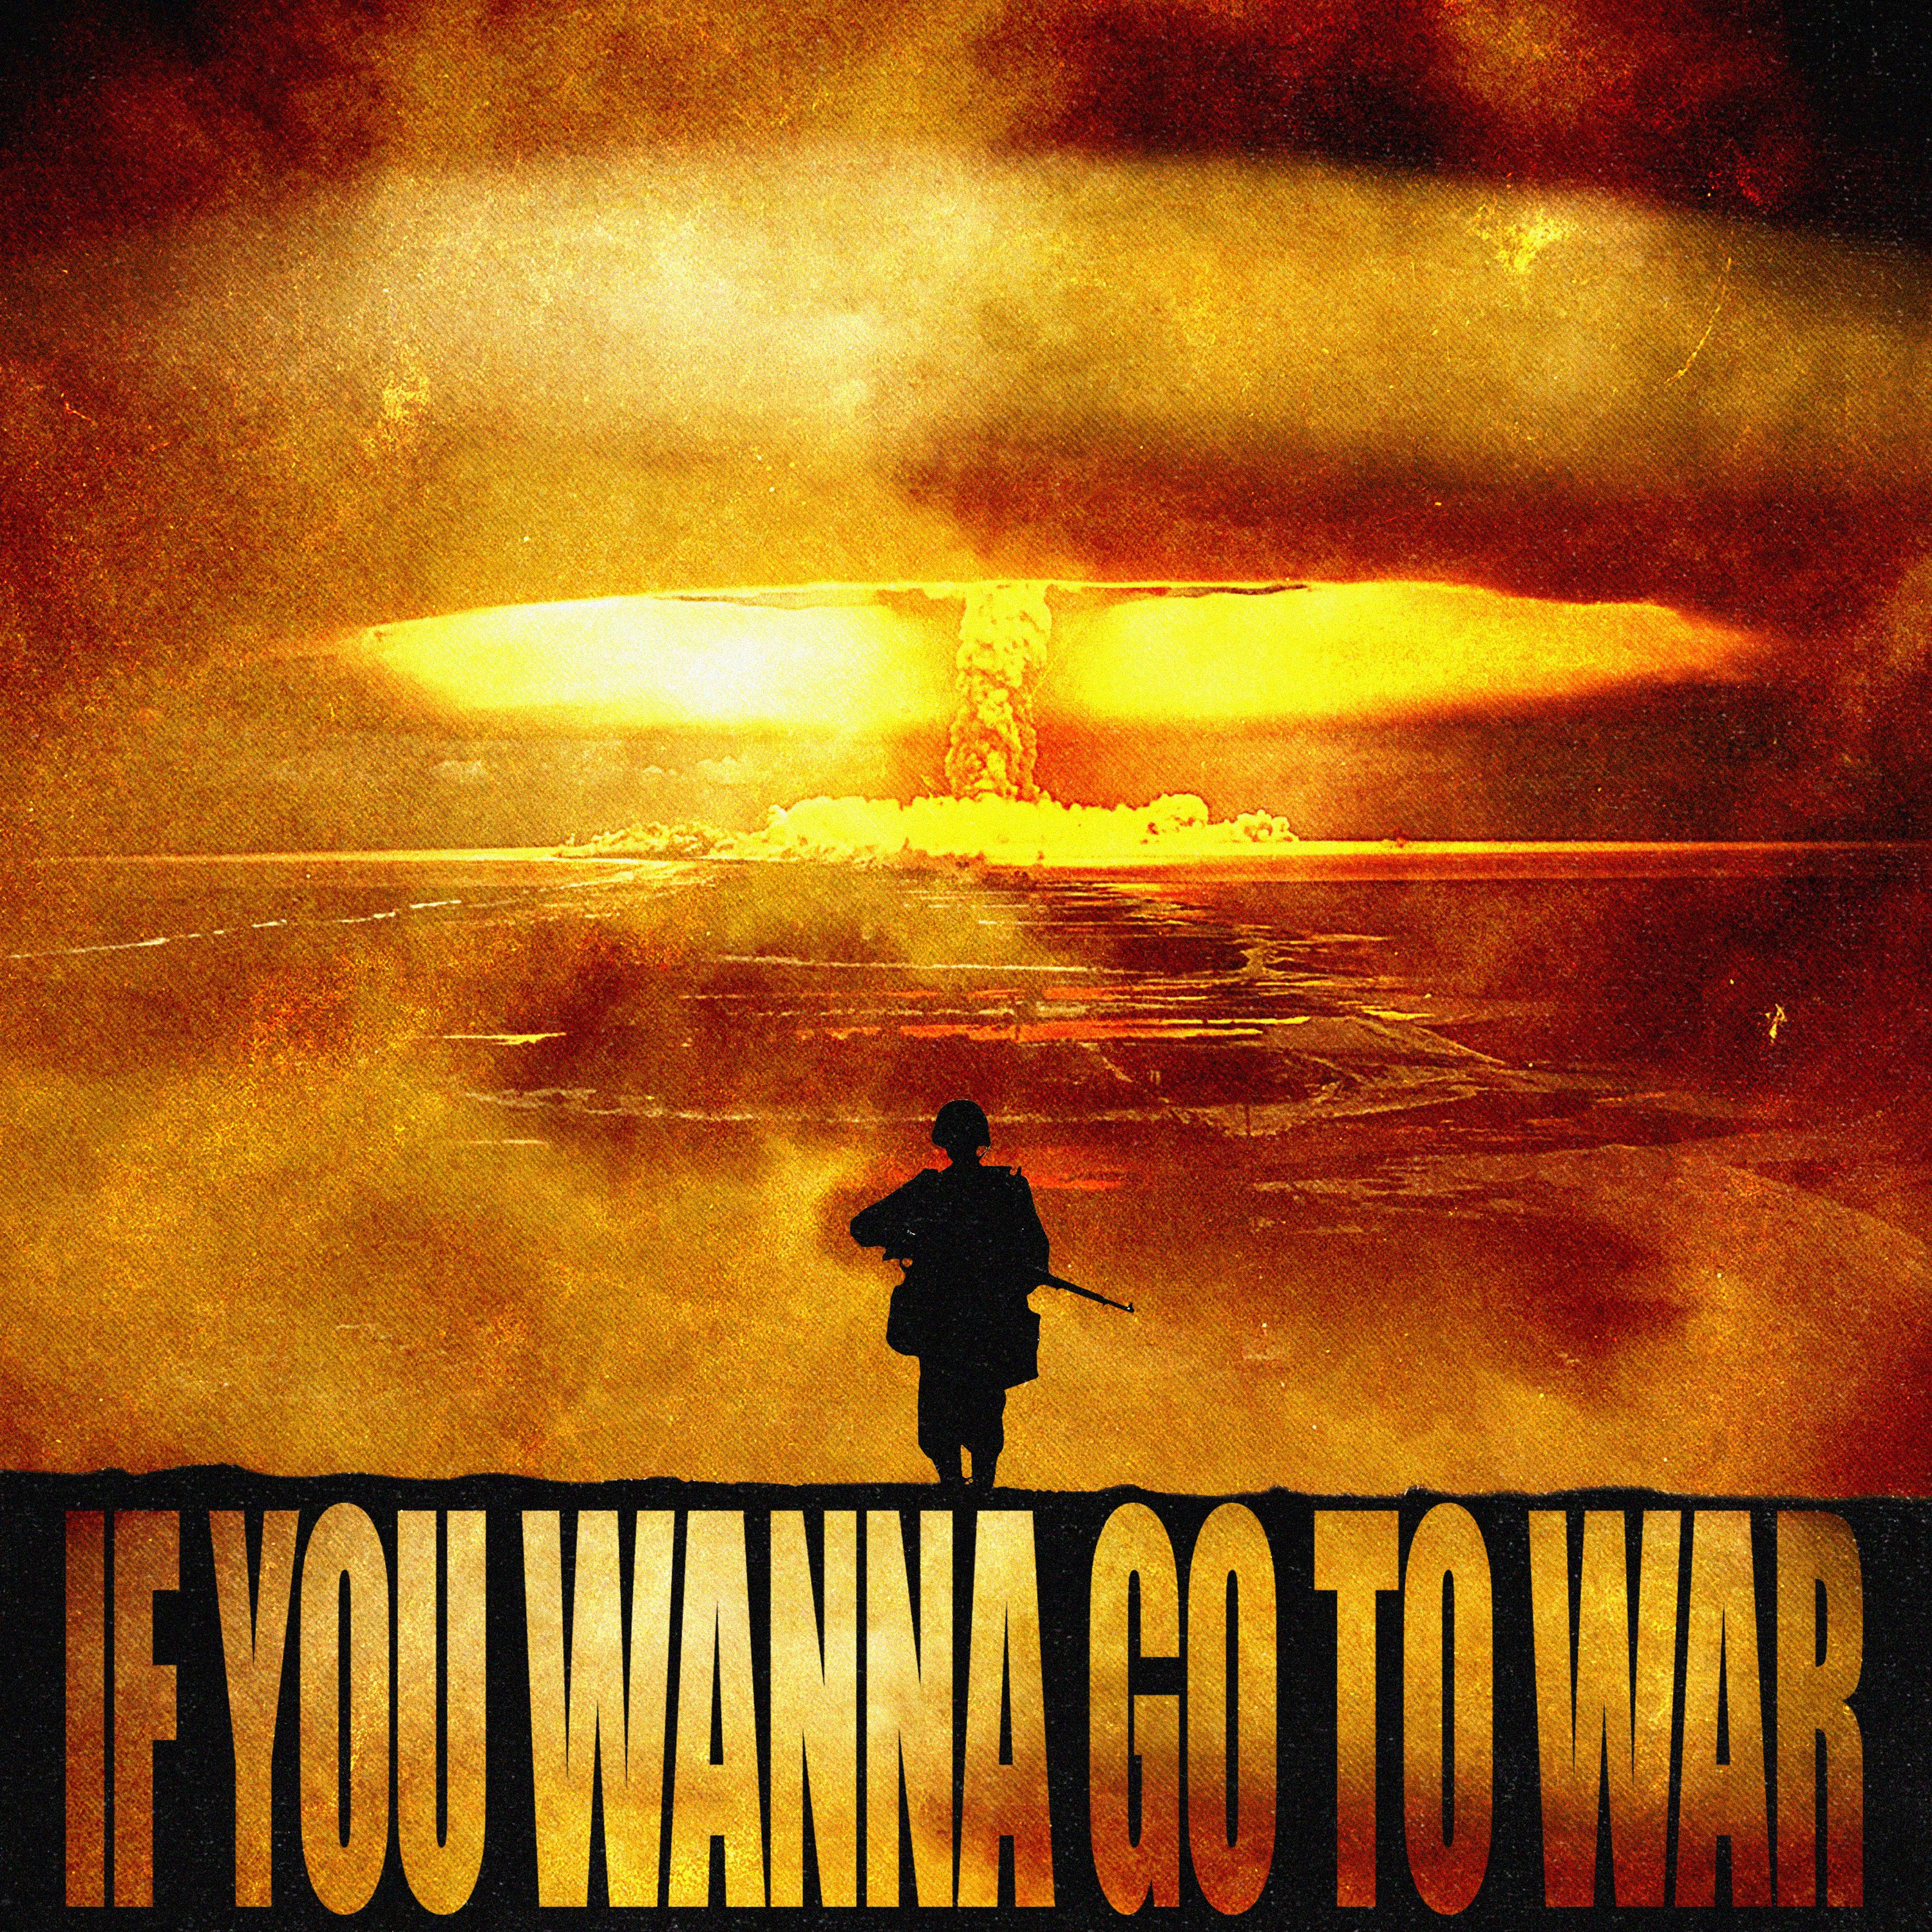 Shkarko IF U WANNA GO TO WAR